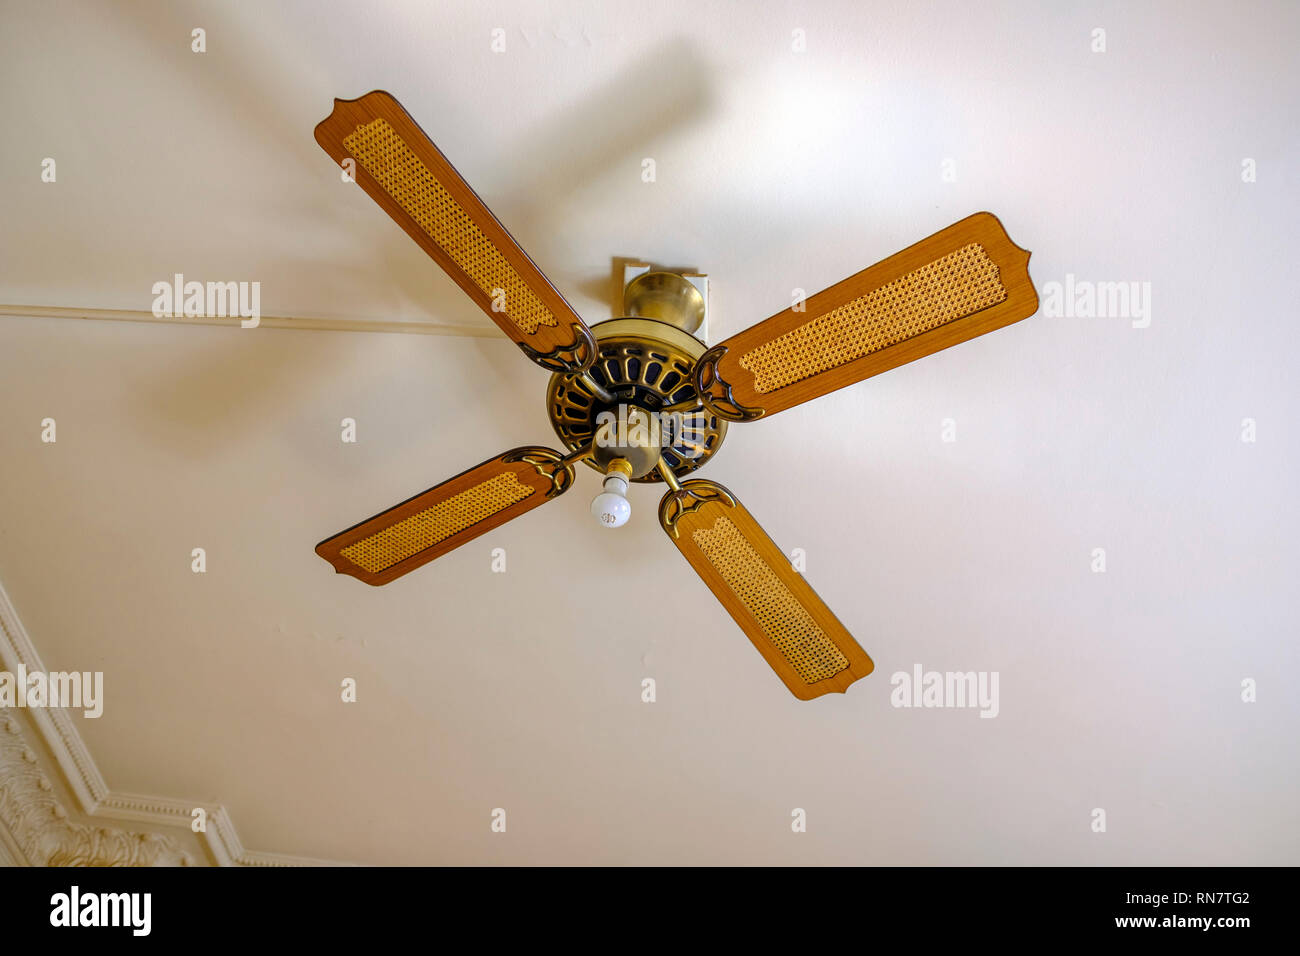 France, ceiling fan, Stock Photo